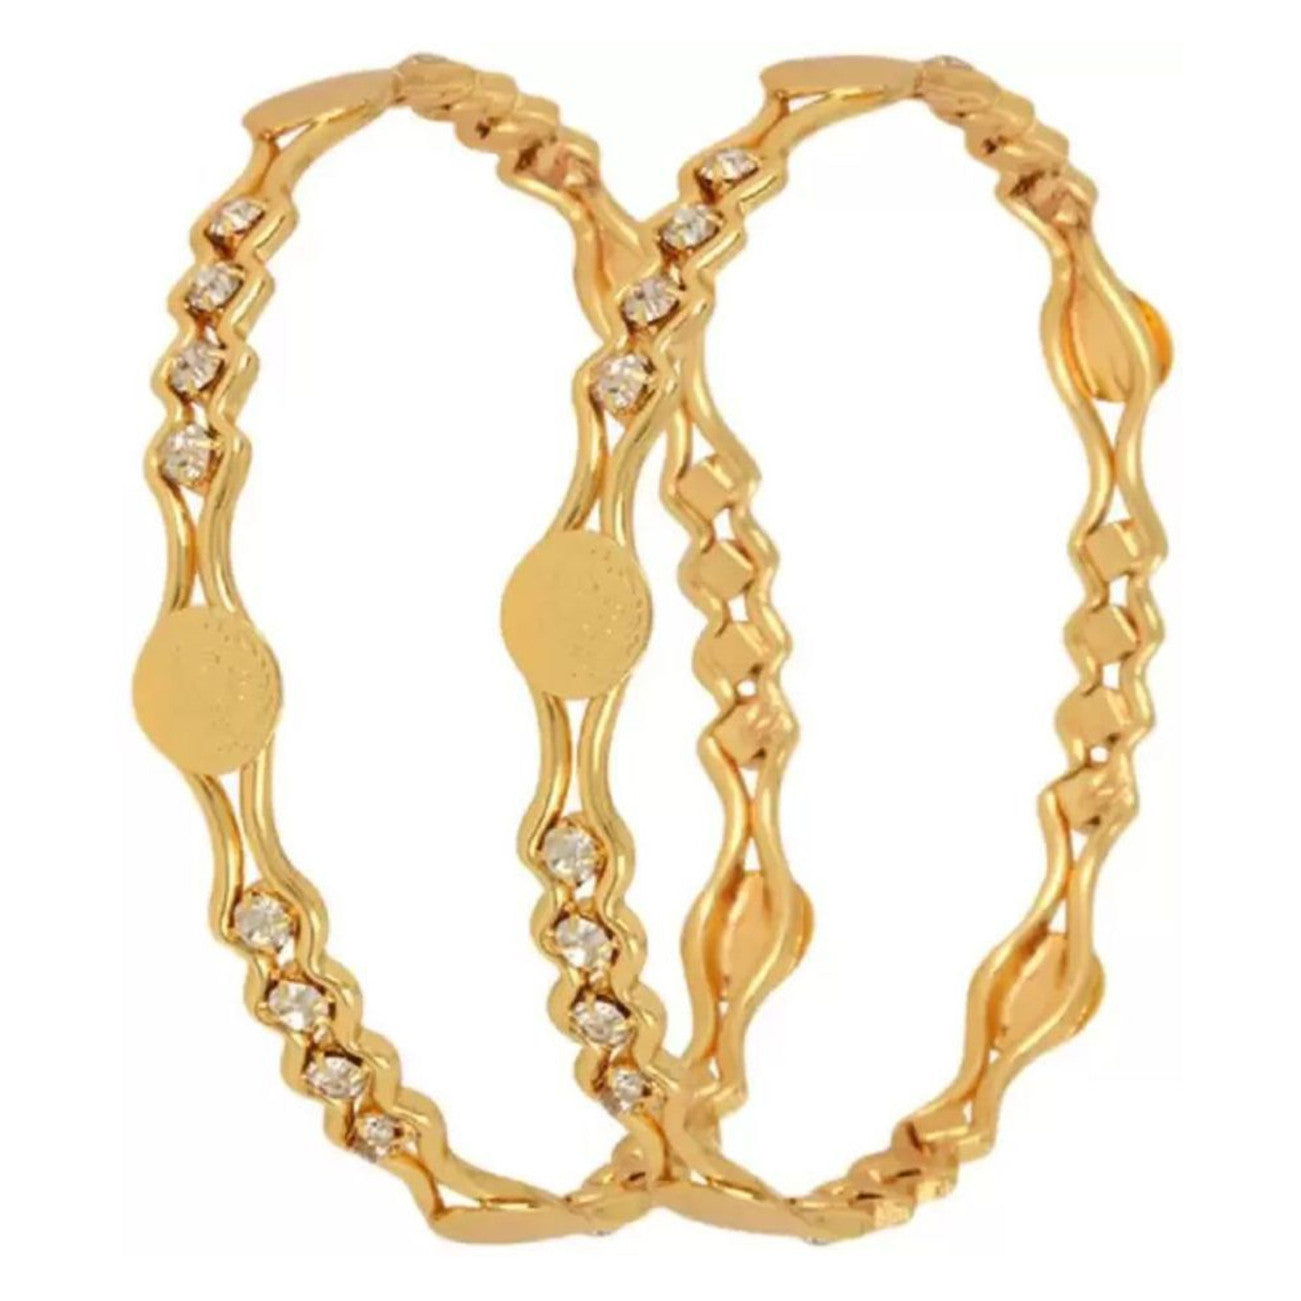 Mekkna Traditional Gold Plated Bangles For Women | Buy Bangles Online from Mekkna